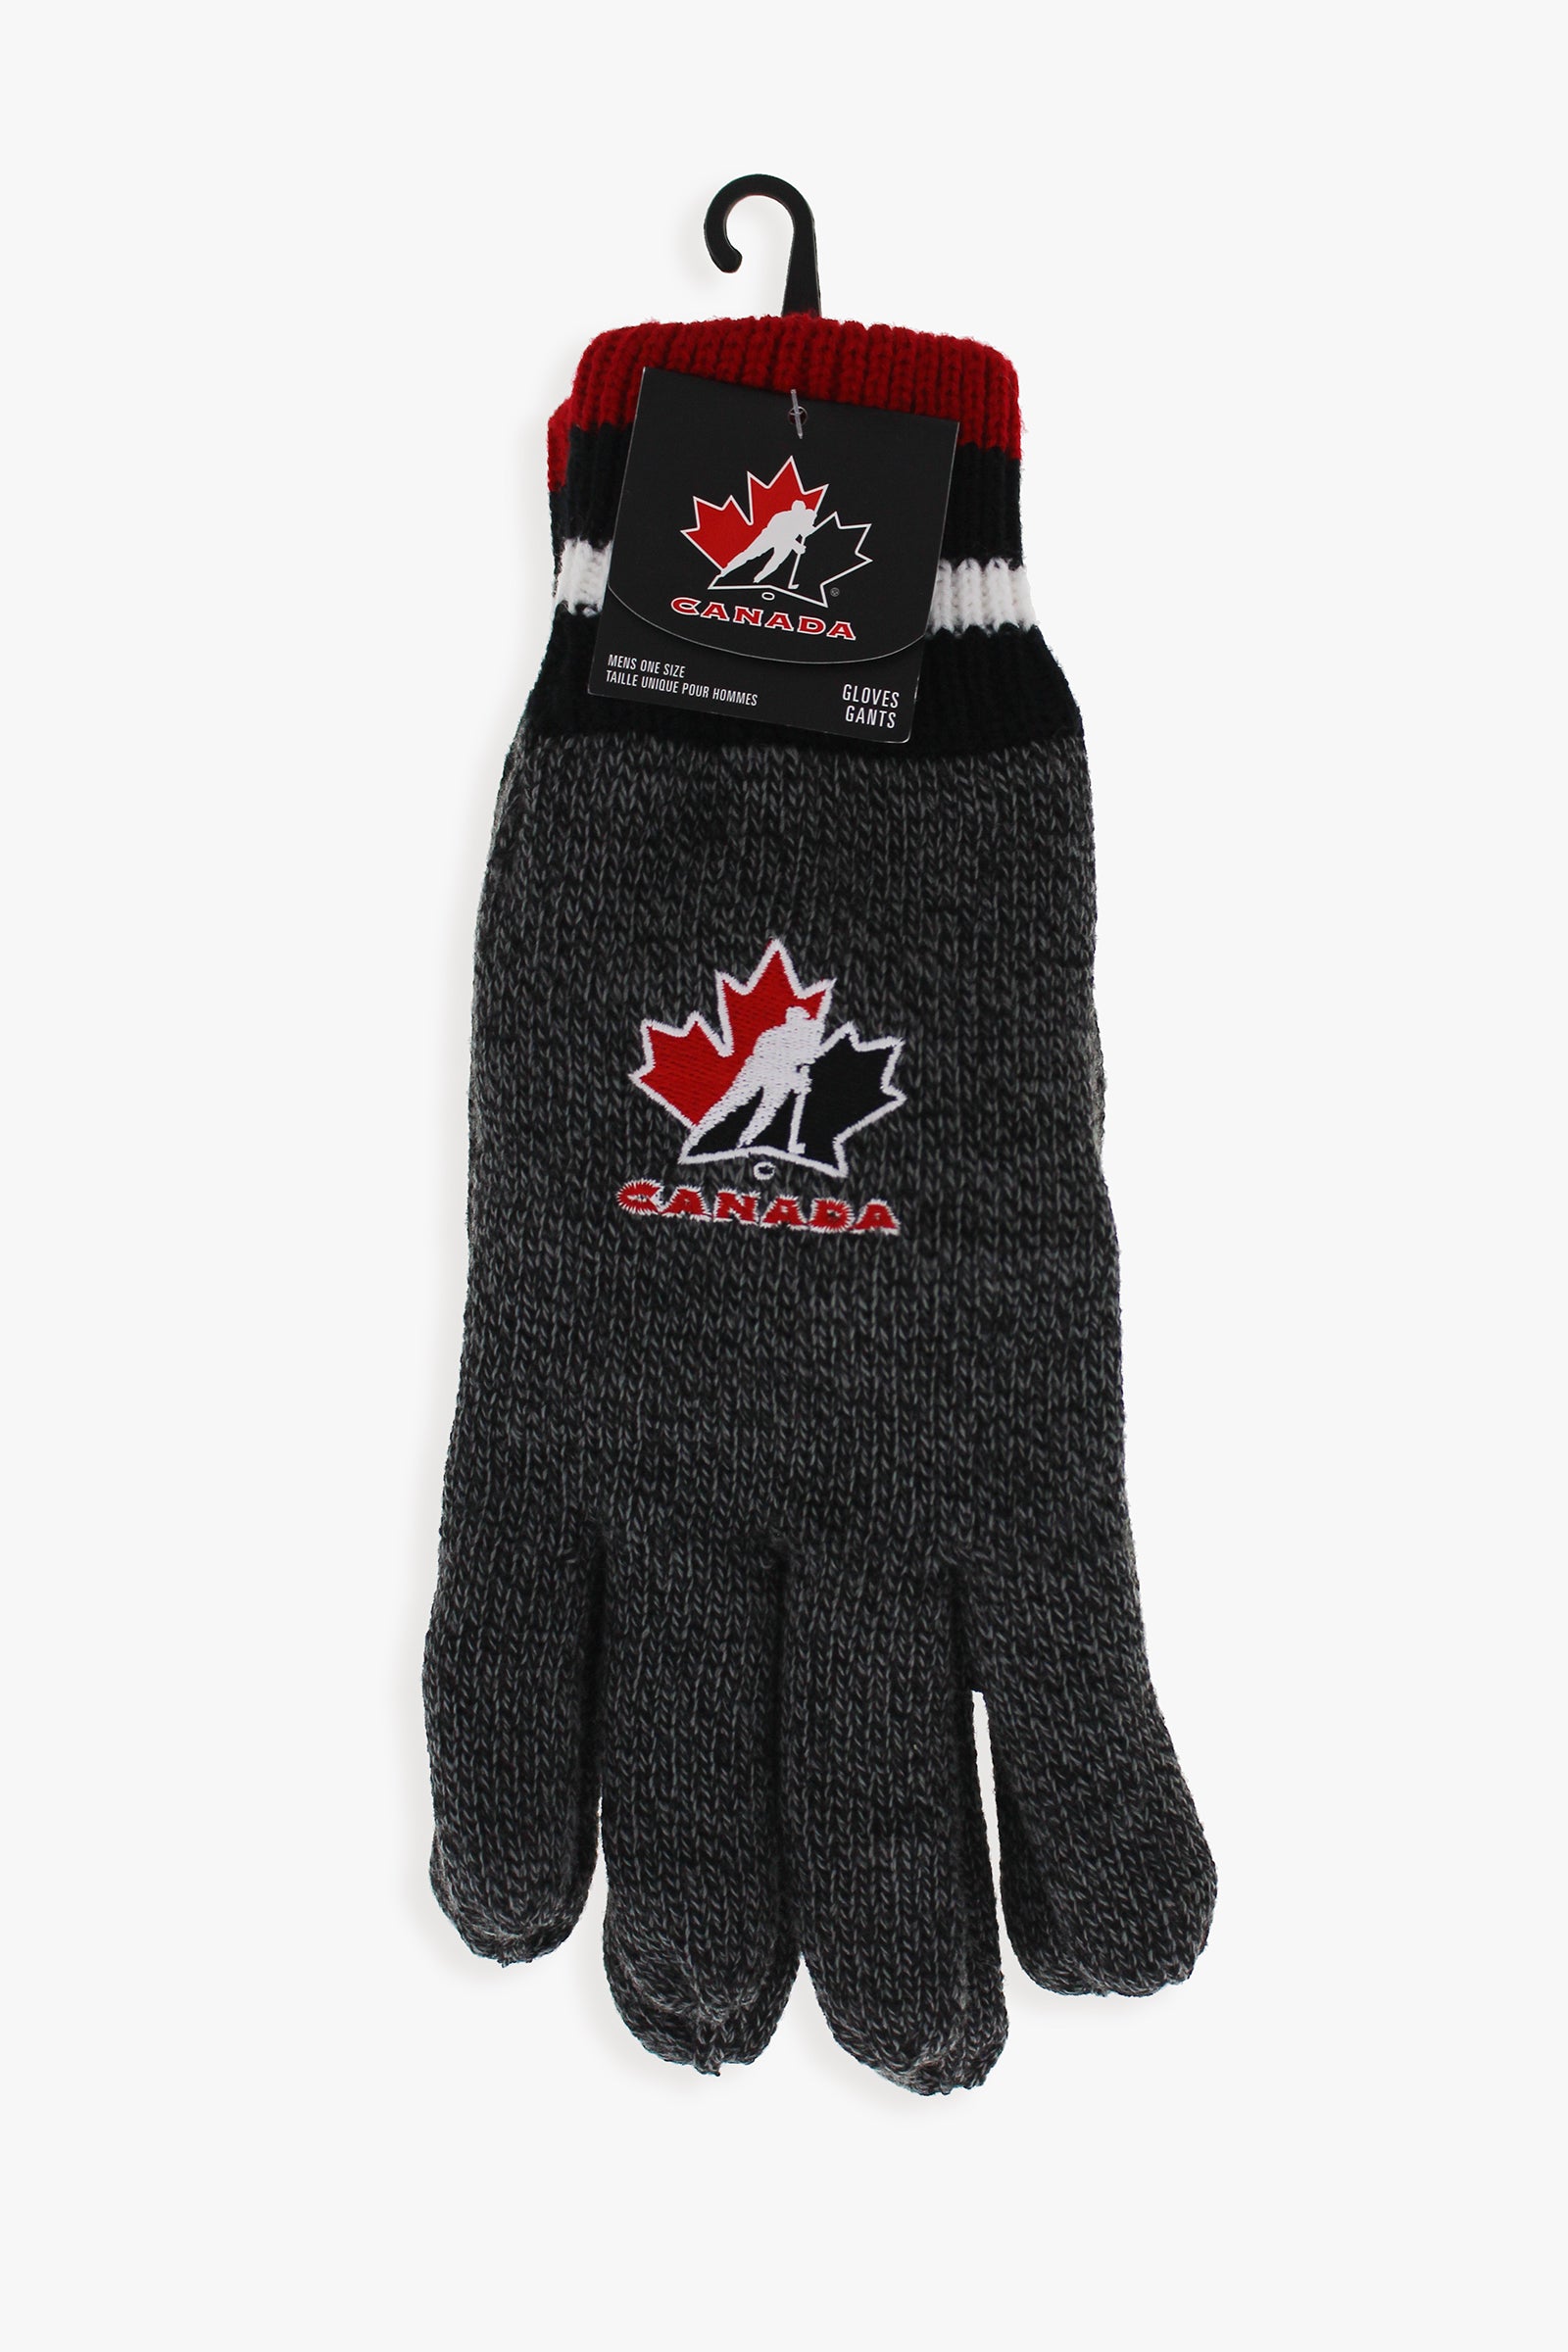 Gertex Hockey Canada Men's Fleece Lined  Gloves